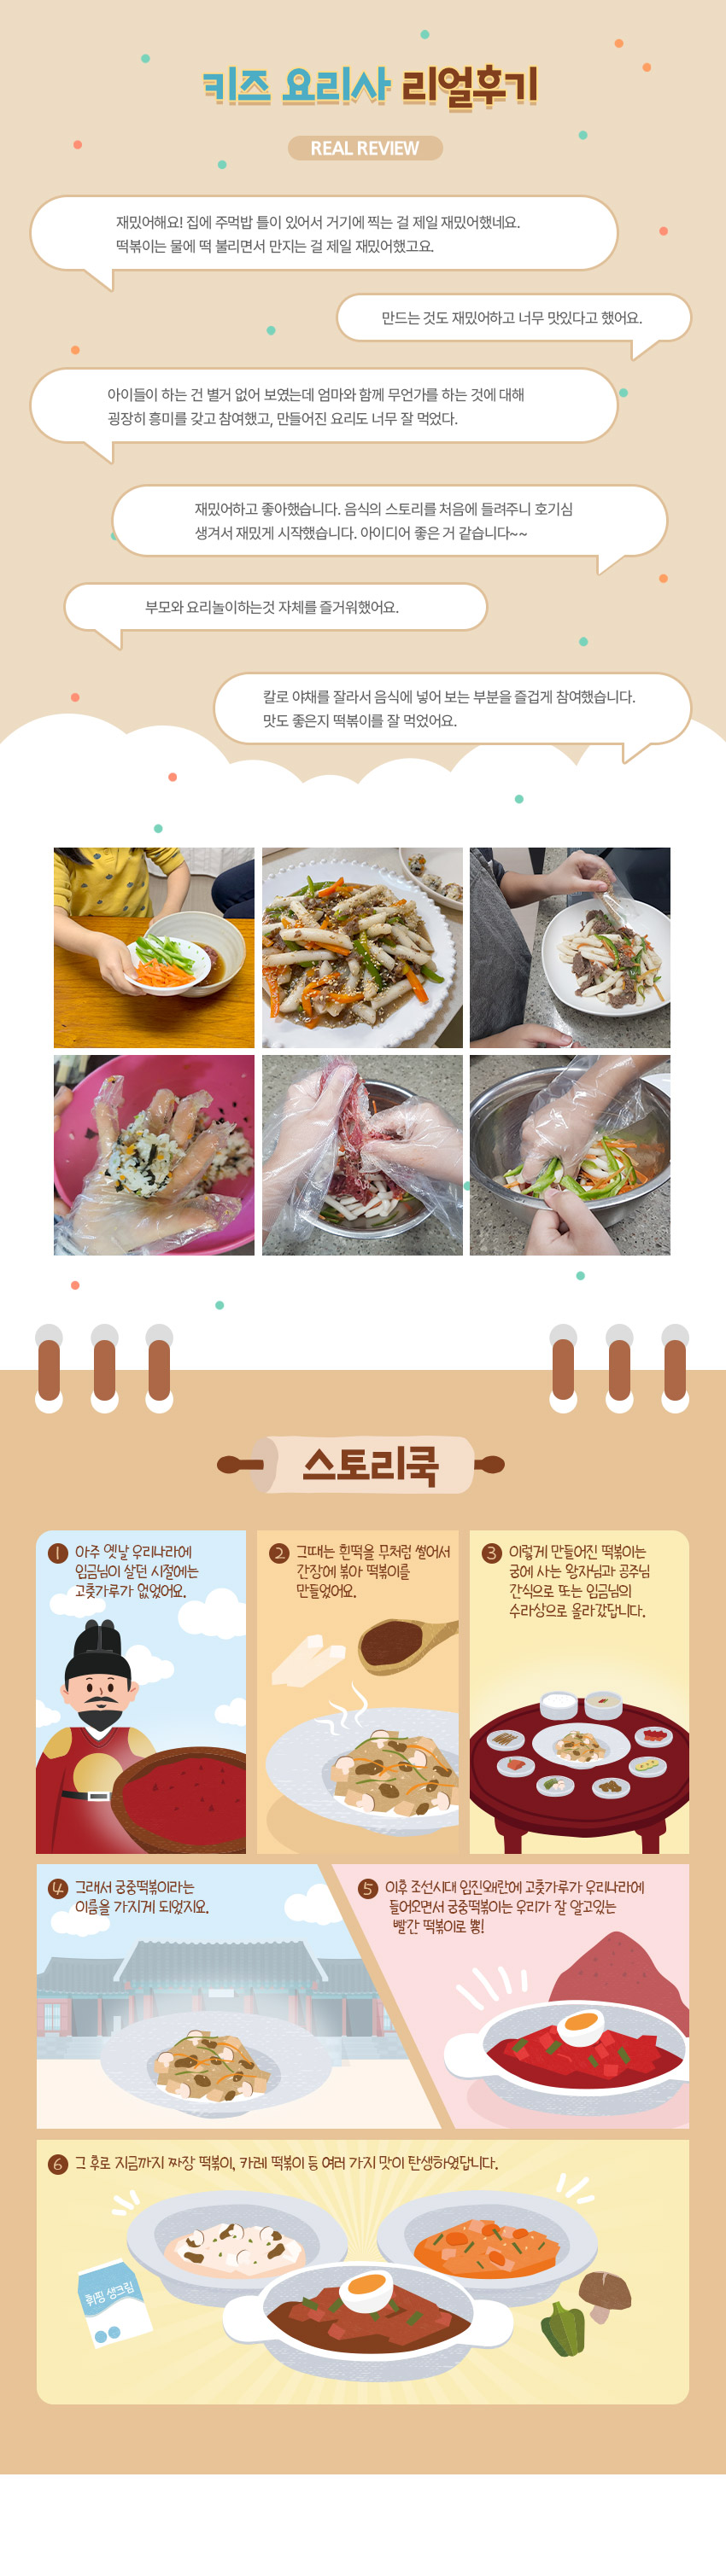 [푸드어셈블] 궁중불고기와주먹밥